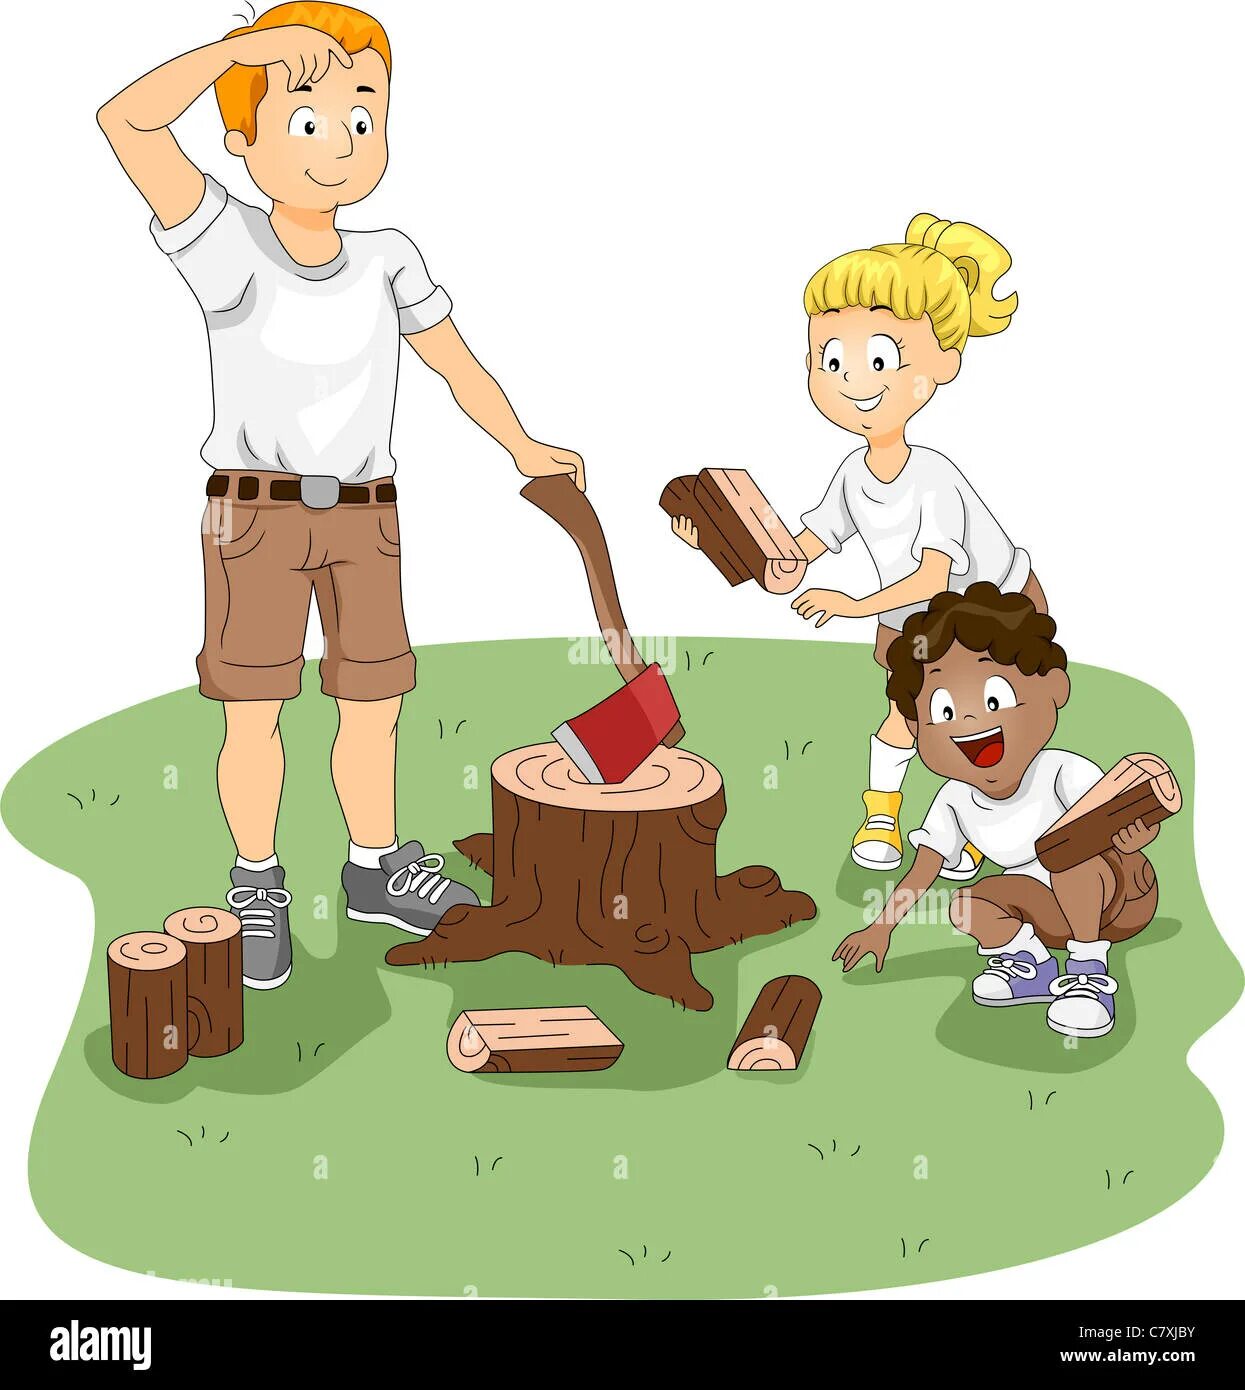 Папа рубит дрова. Дети рубят дрова. Расколю дрова иллюстрация. Папа рубит дрова для детей. Что угодно картинки